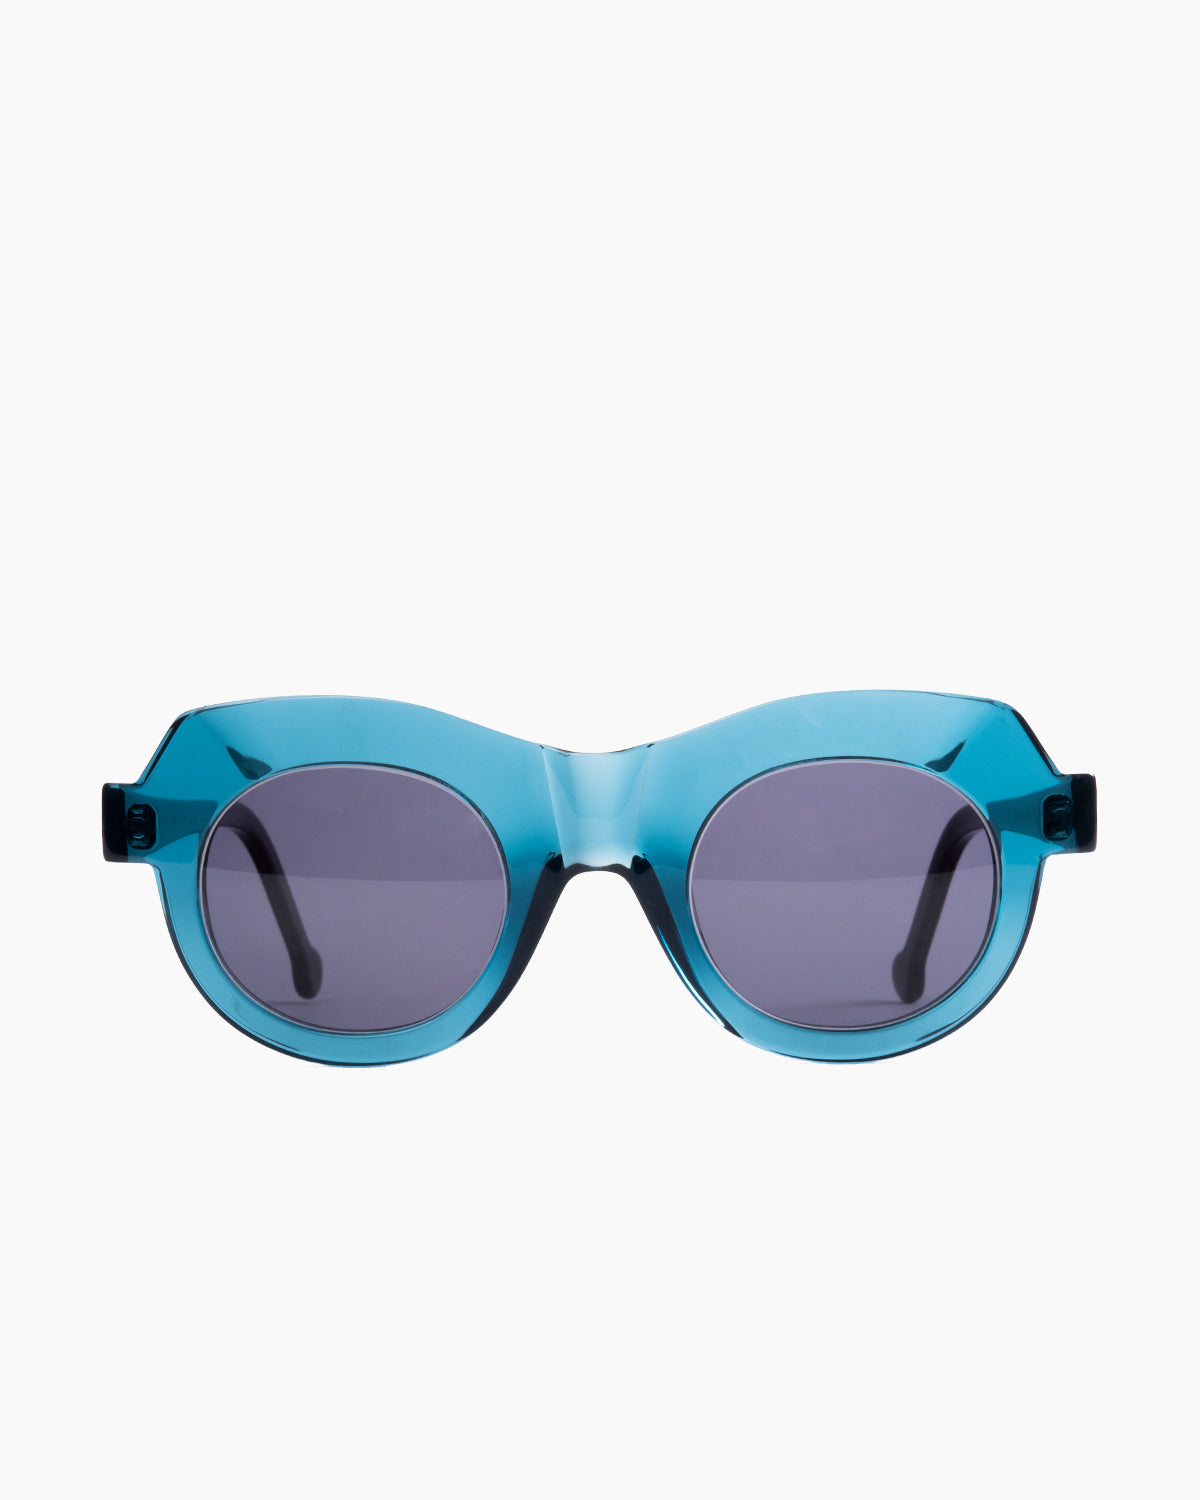 Marie-Sophie Dion - Latraverse3 - Blu | glasses bar:  Marie-Sophie Dion